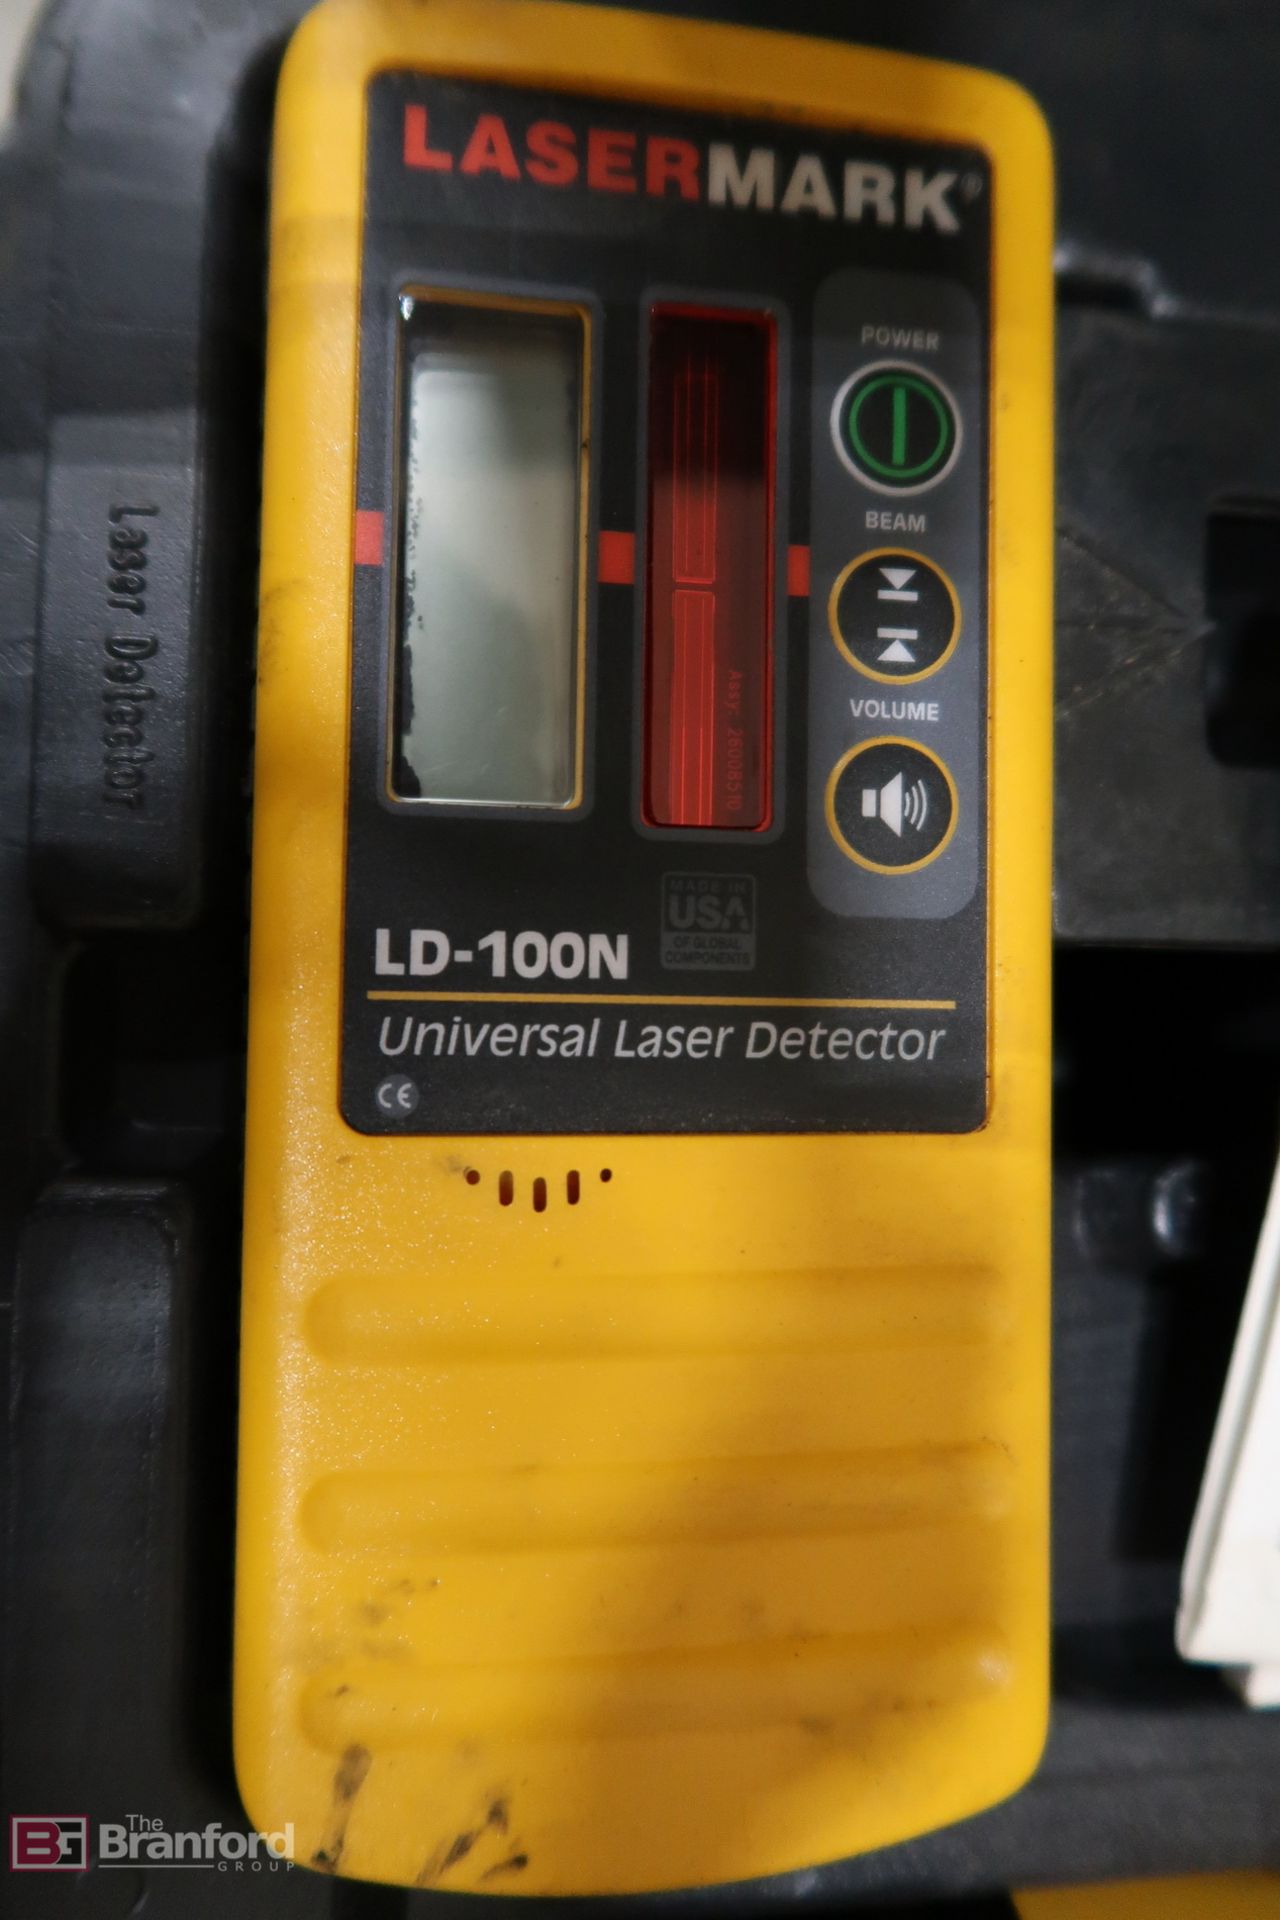 Laser Mark LM-30 Laser Detector and Laser Mark LD -100N Universal Laser Detector - Image 2 of 3